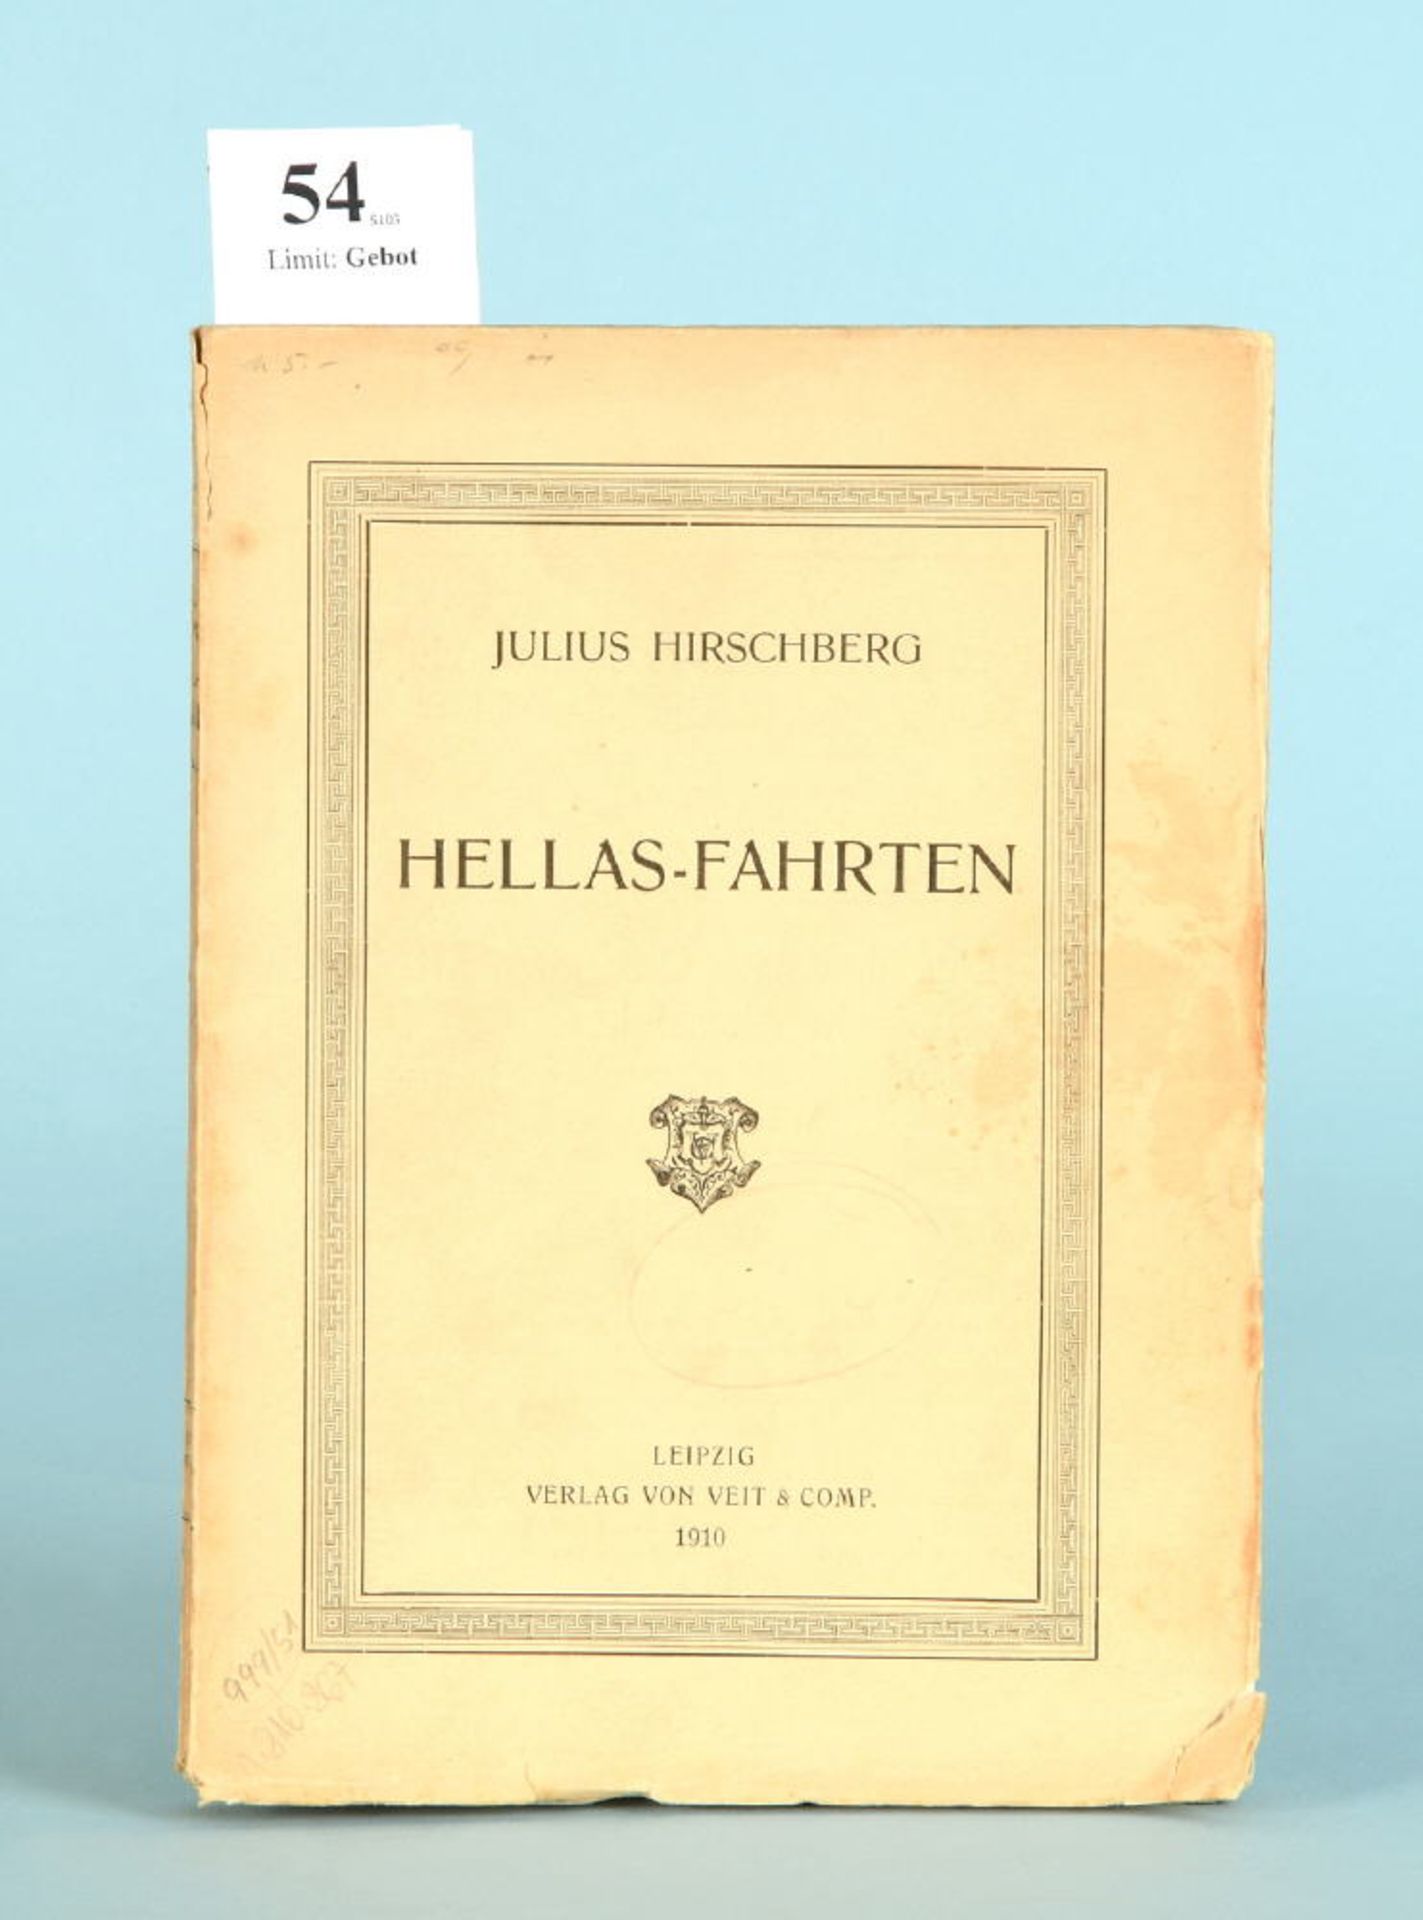 Hirschberg, Julius "Hellas-Fahrten"264 S., Vlg. Veit & Comp., Leipzig, 1910, PpE, l.Gsp.